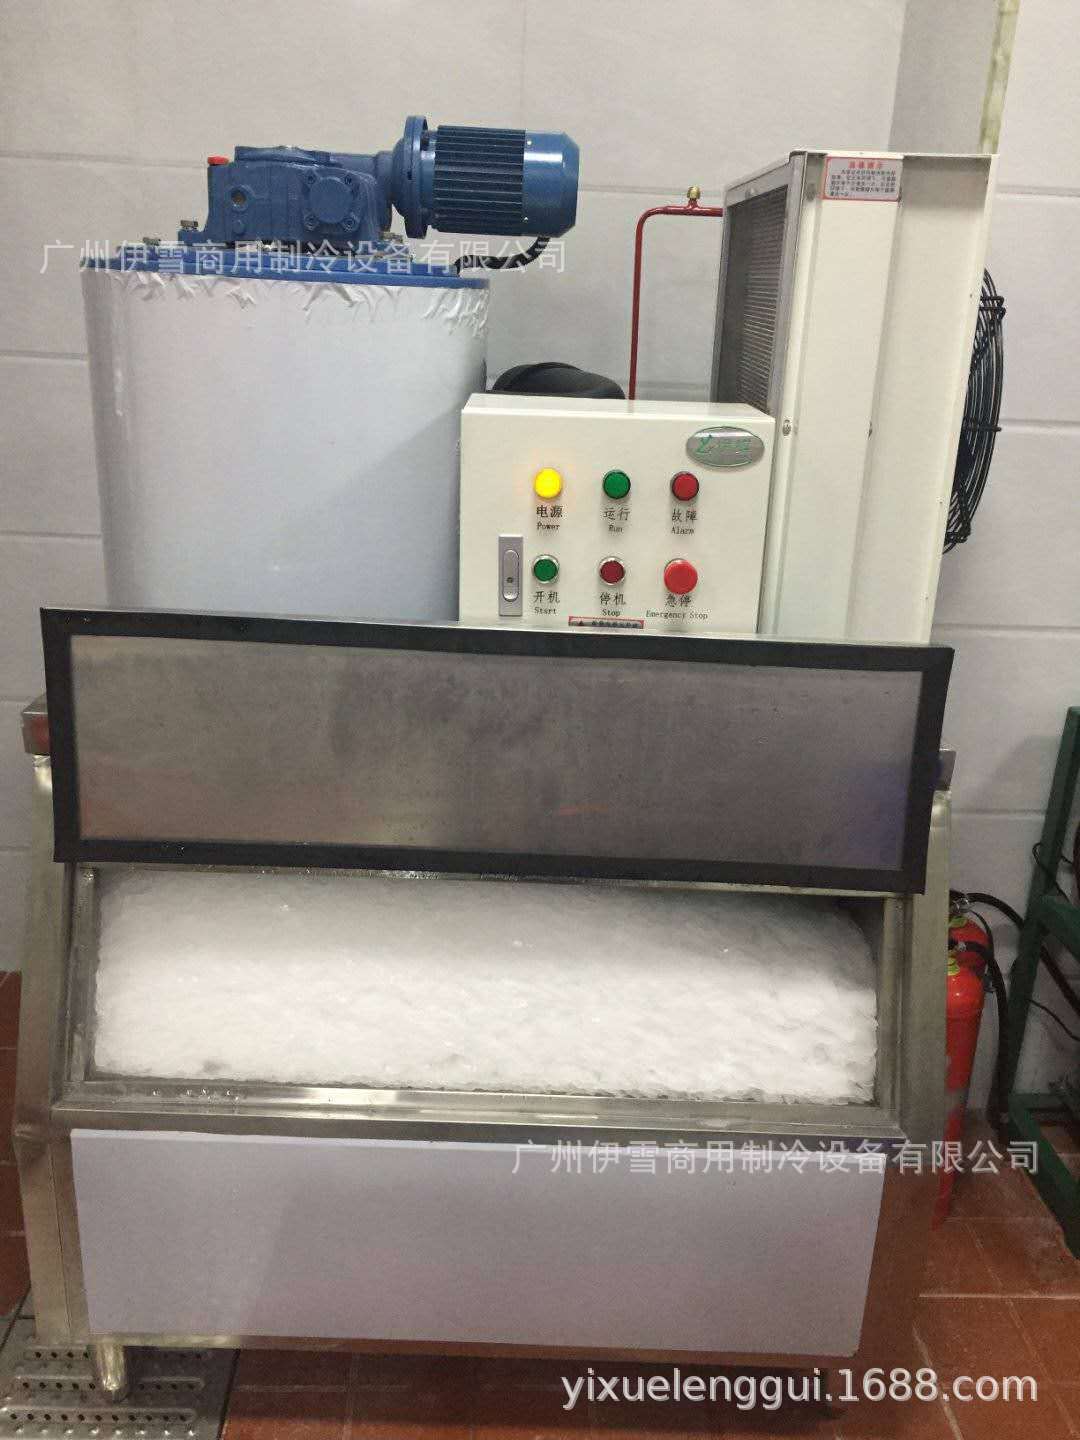 伊蝶300公斤片冰机商用超市水产海鲜市场片冰制冰机 鳞片机示例图3